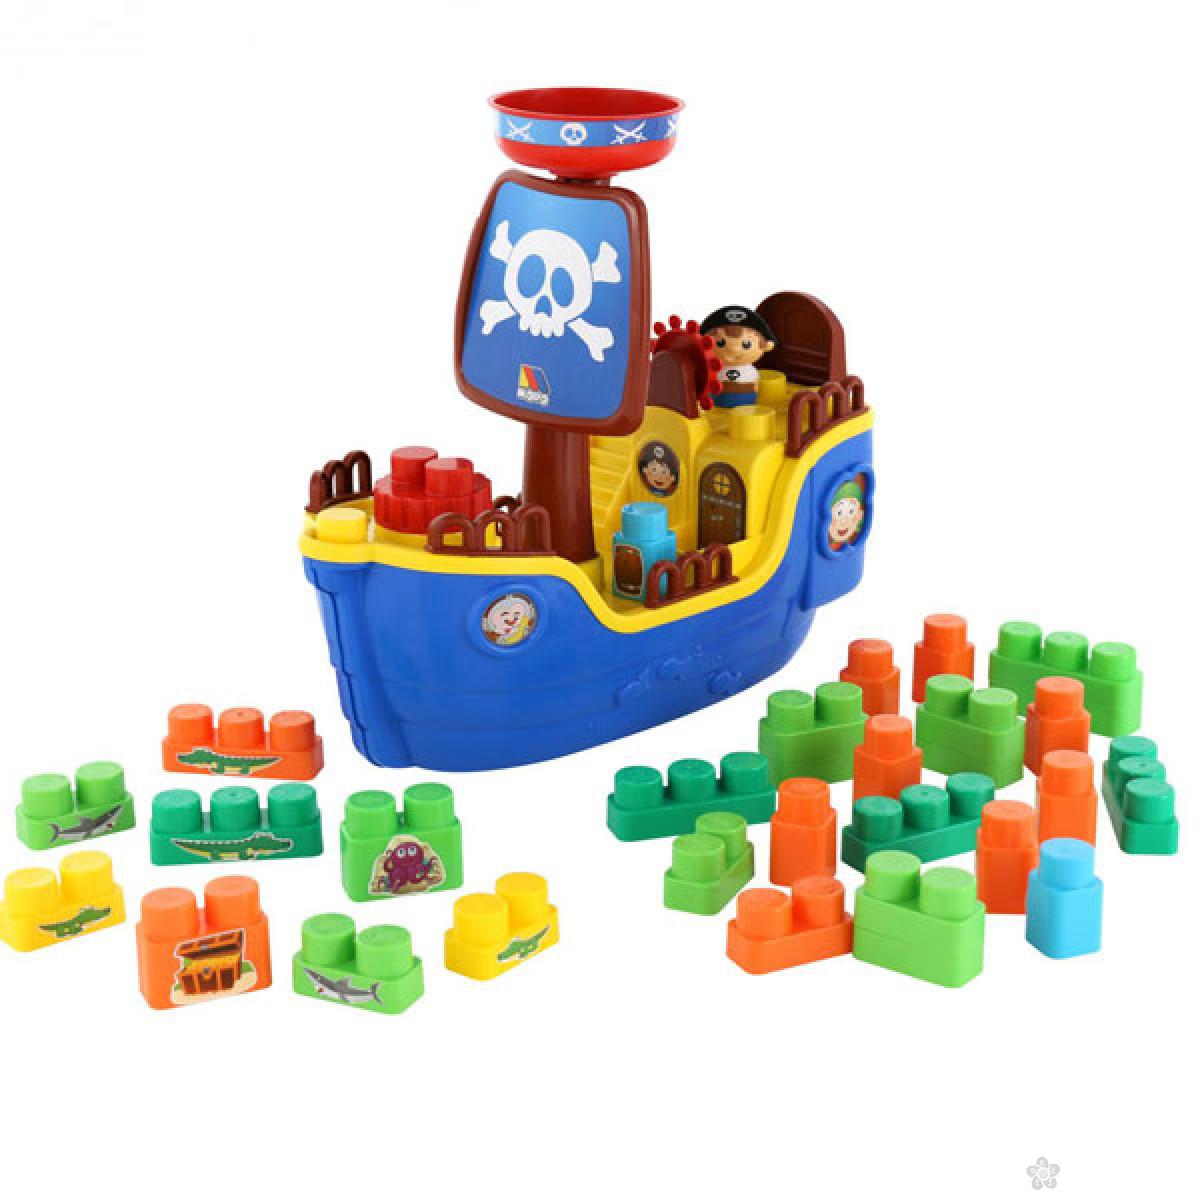 Piratski brod kocke set 62246 